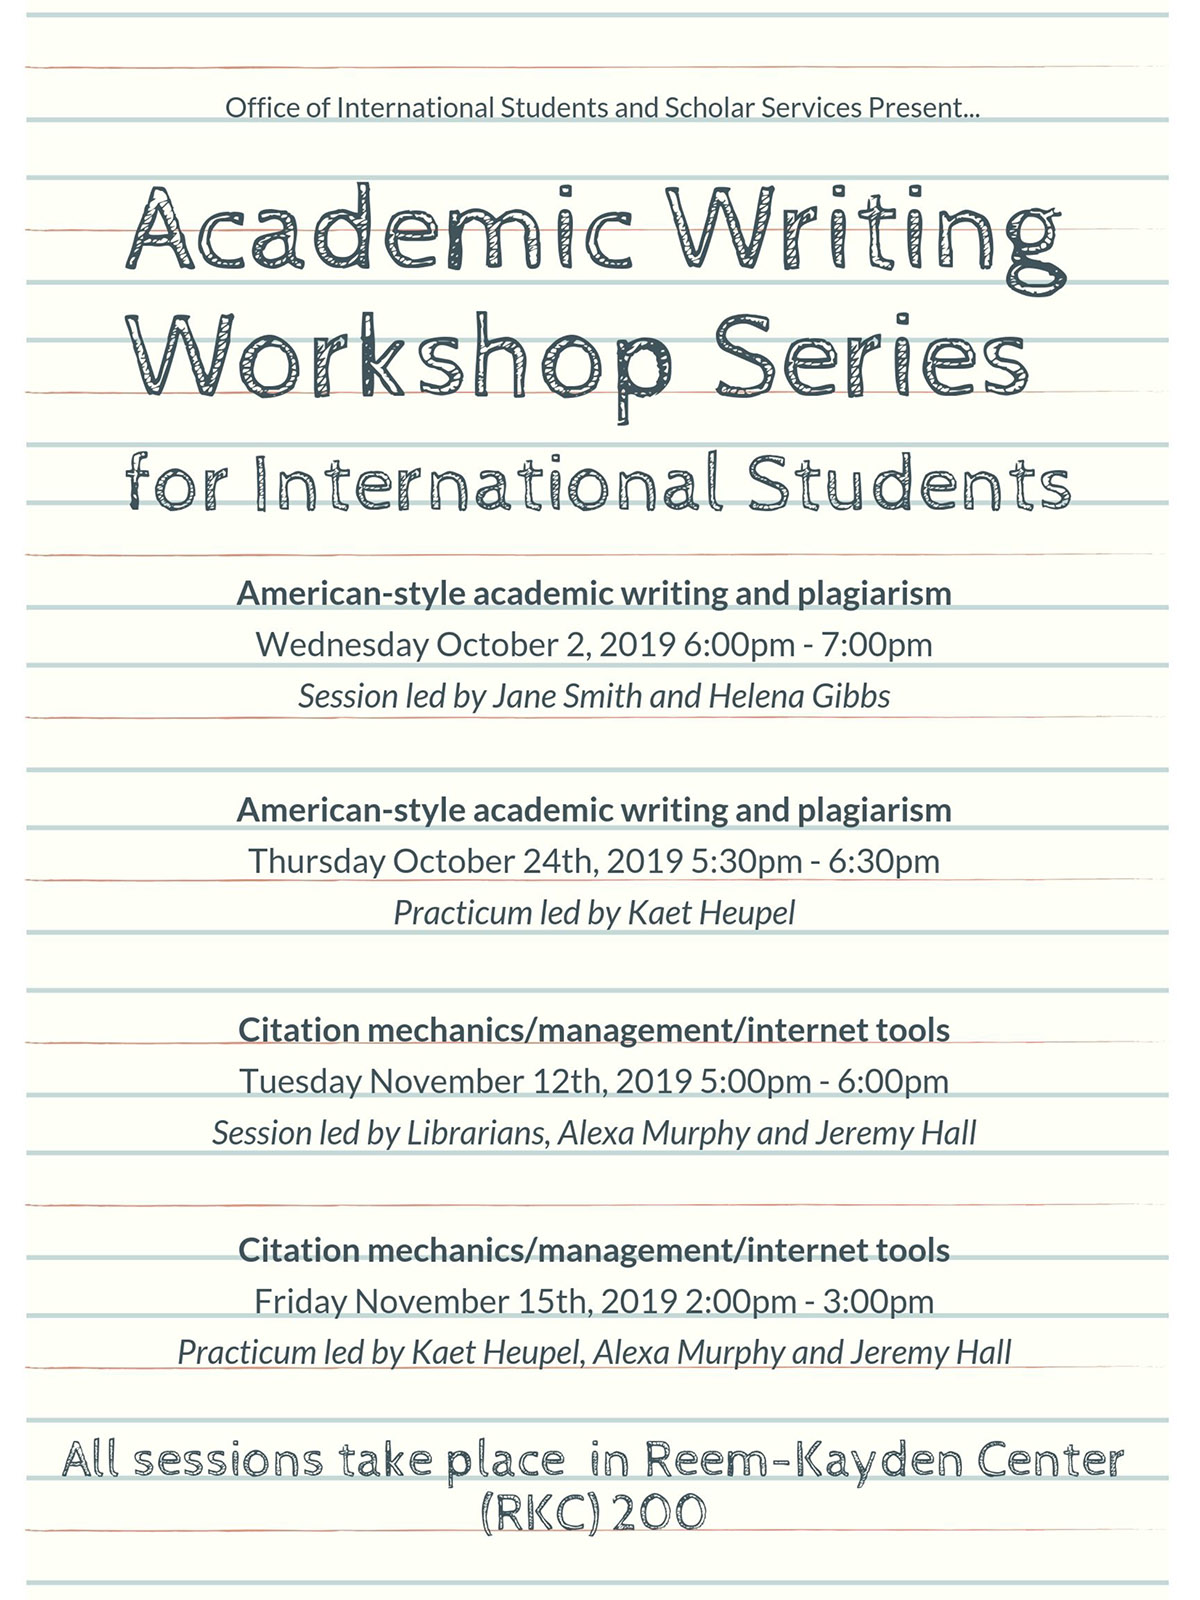 Academic Writing Workshop Series